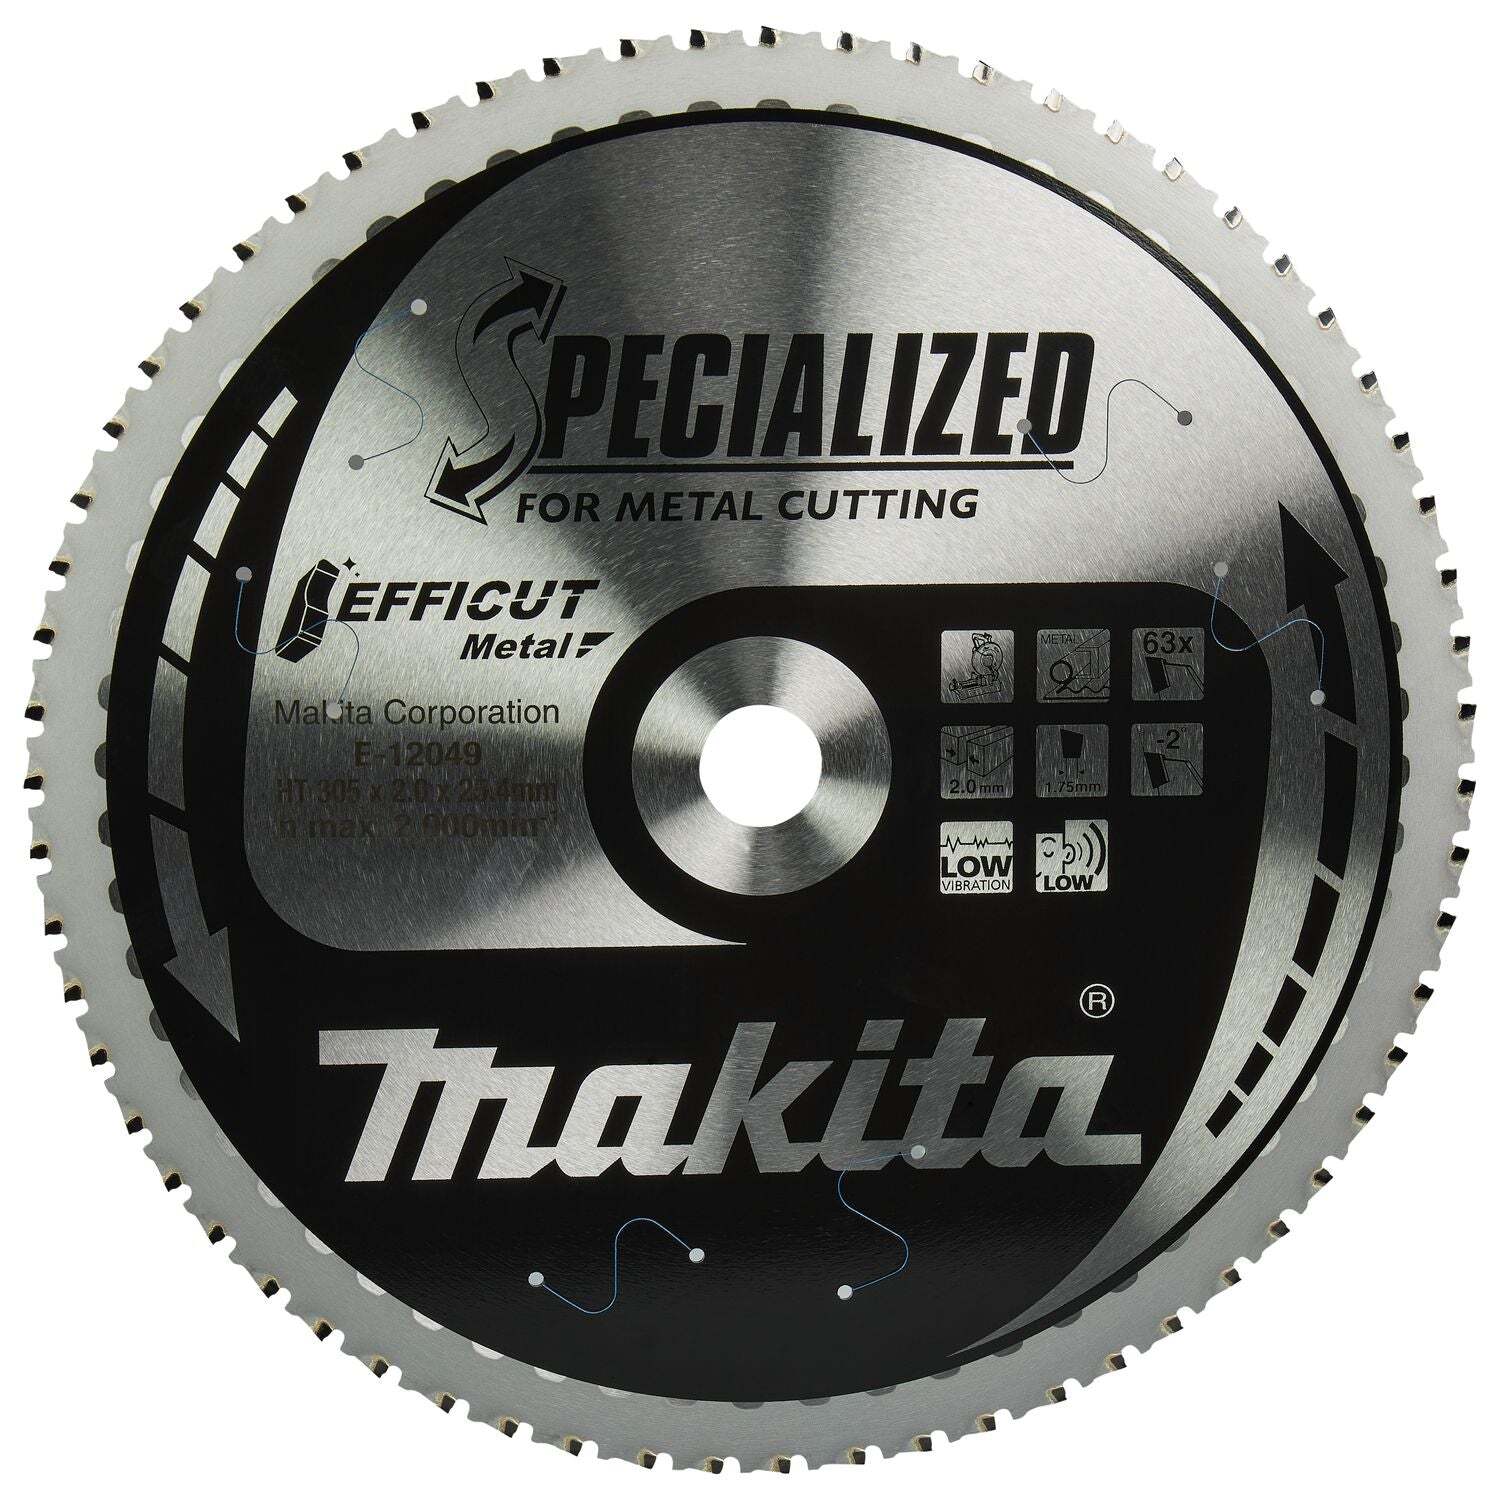 Makita E-12049 Afkortzaagblad voor Staal | Efficut | Ø 305mm Asgat 25,4mm 63T